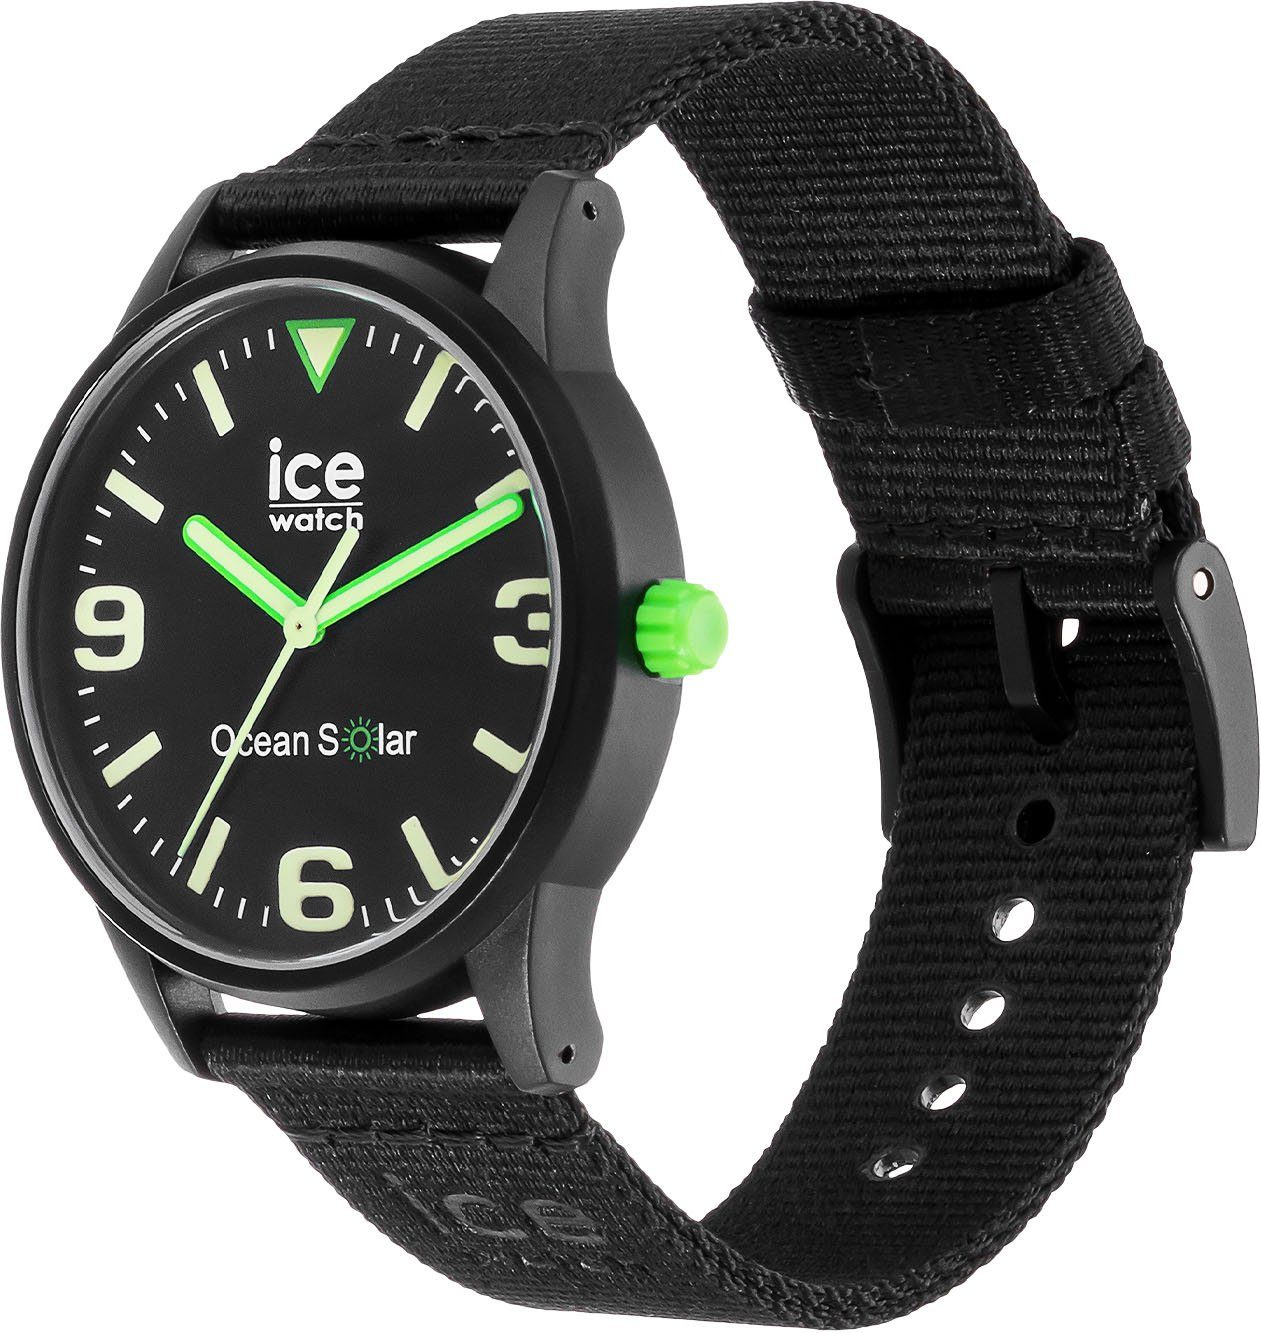 schwarz ICE - Solaruhr ocean SOLAR, 019647 ice-watch